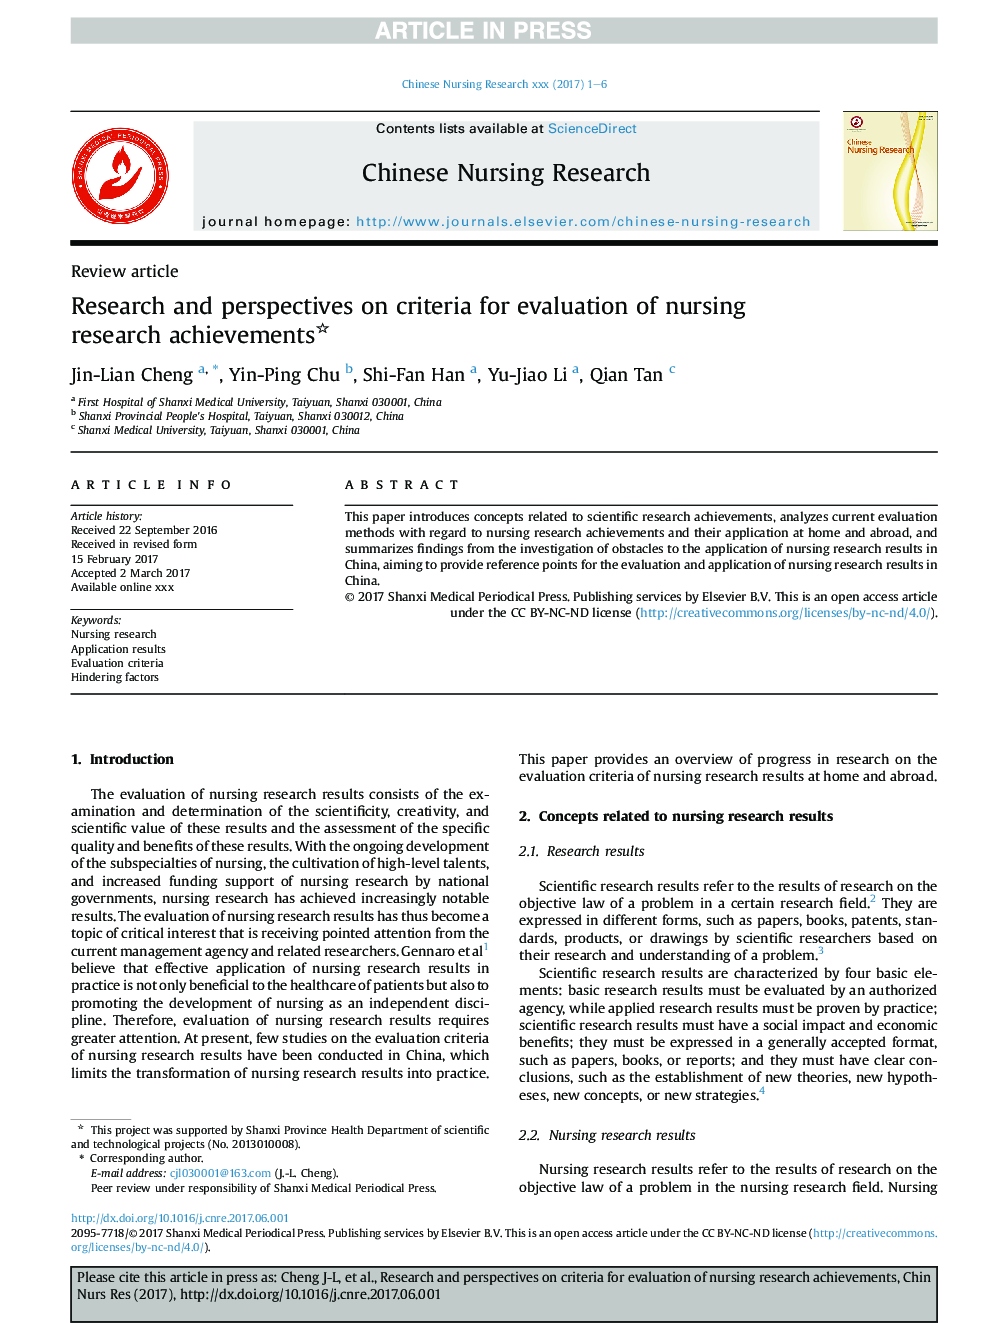 تحقیق و دیدگاه ها در مورد معیارهای ارزیابی دستاوردهای پژوهشی پرستاری 